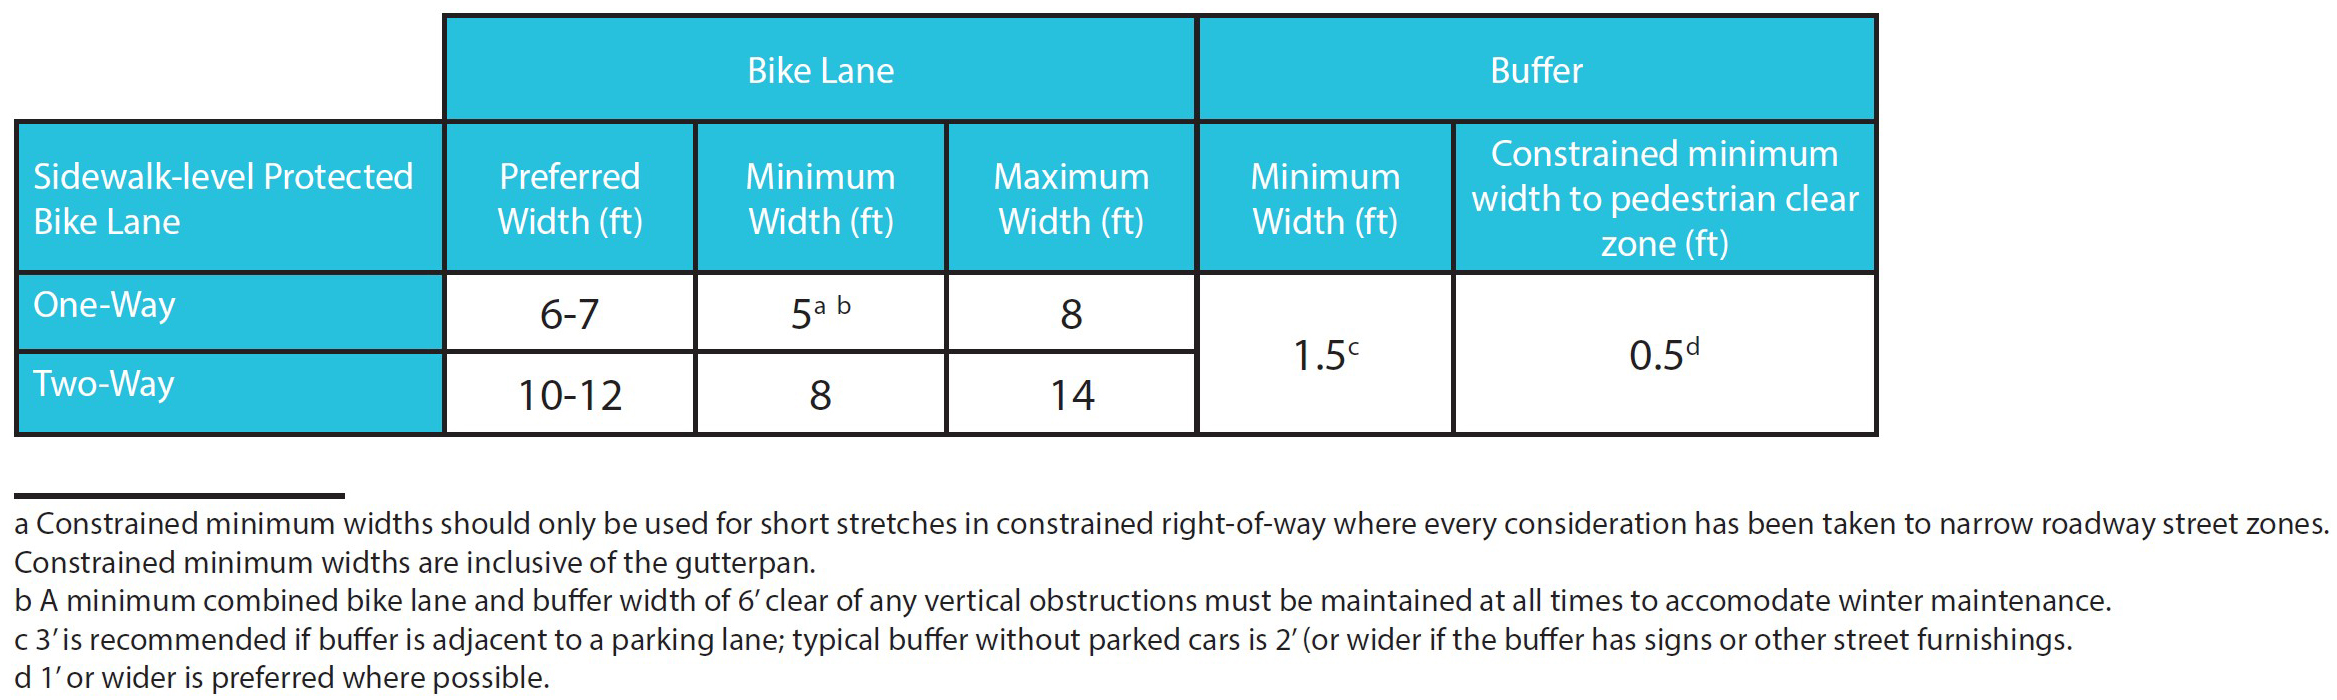 3.4I Sidewalk-Level Protected Bike Lane Dimensions.jpg